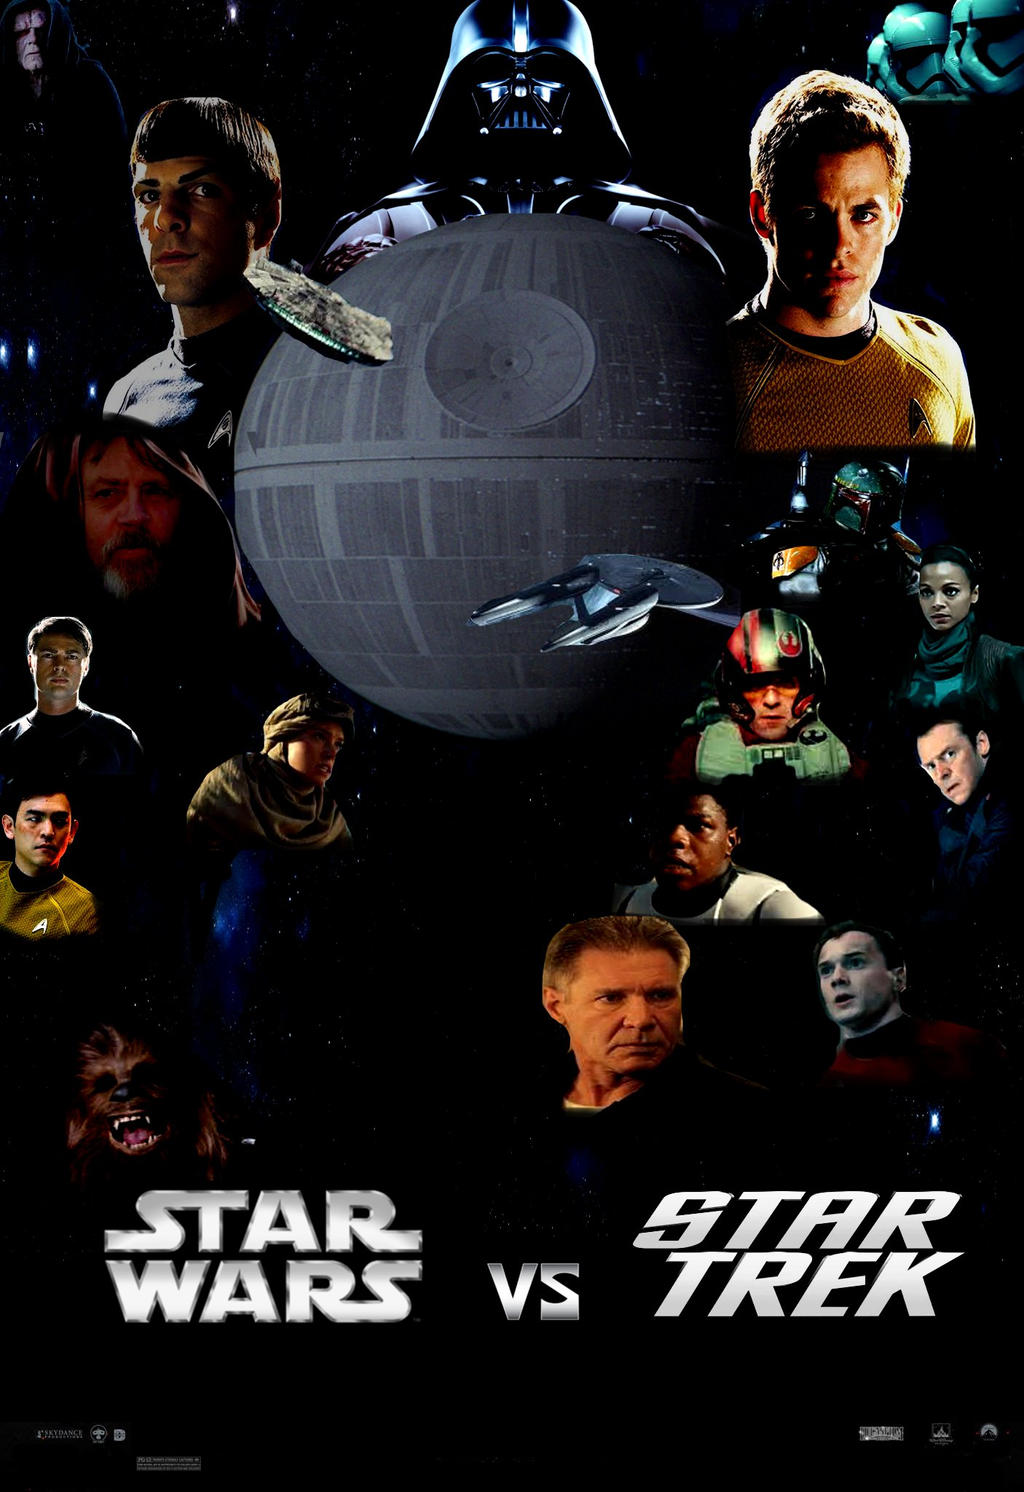 star wars vs star trek wallpaper